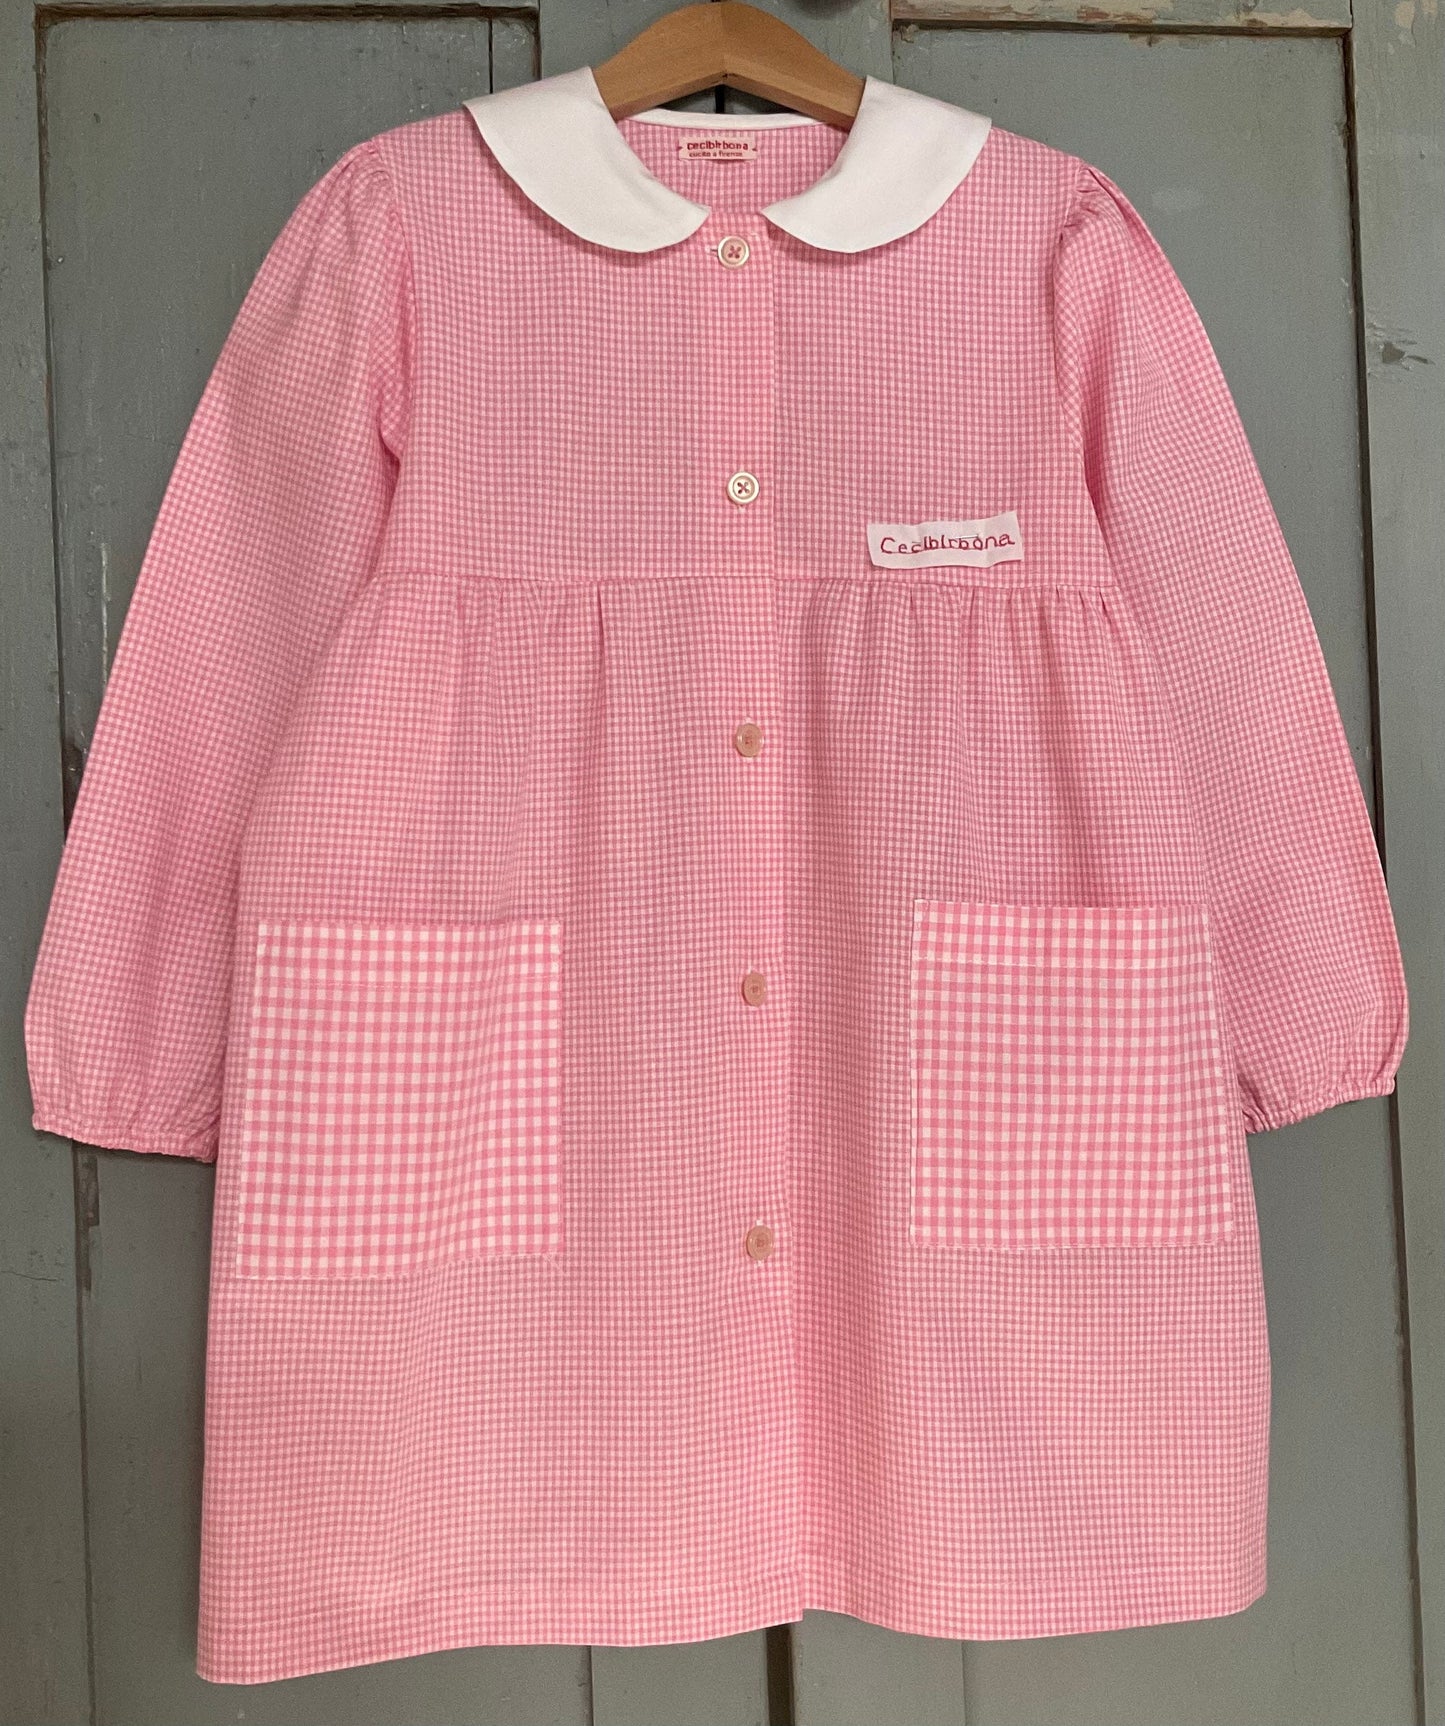 Grembiule rosa taglia 1/2 per bambina  - scuola materna - asilo nido - cotone a quadretti rosa bianchi - grembiulino quadrettini bambina